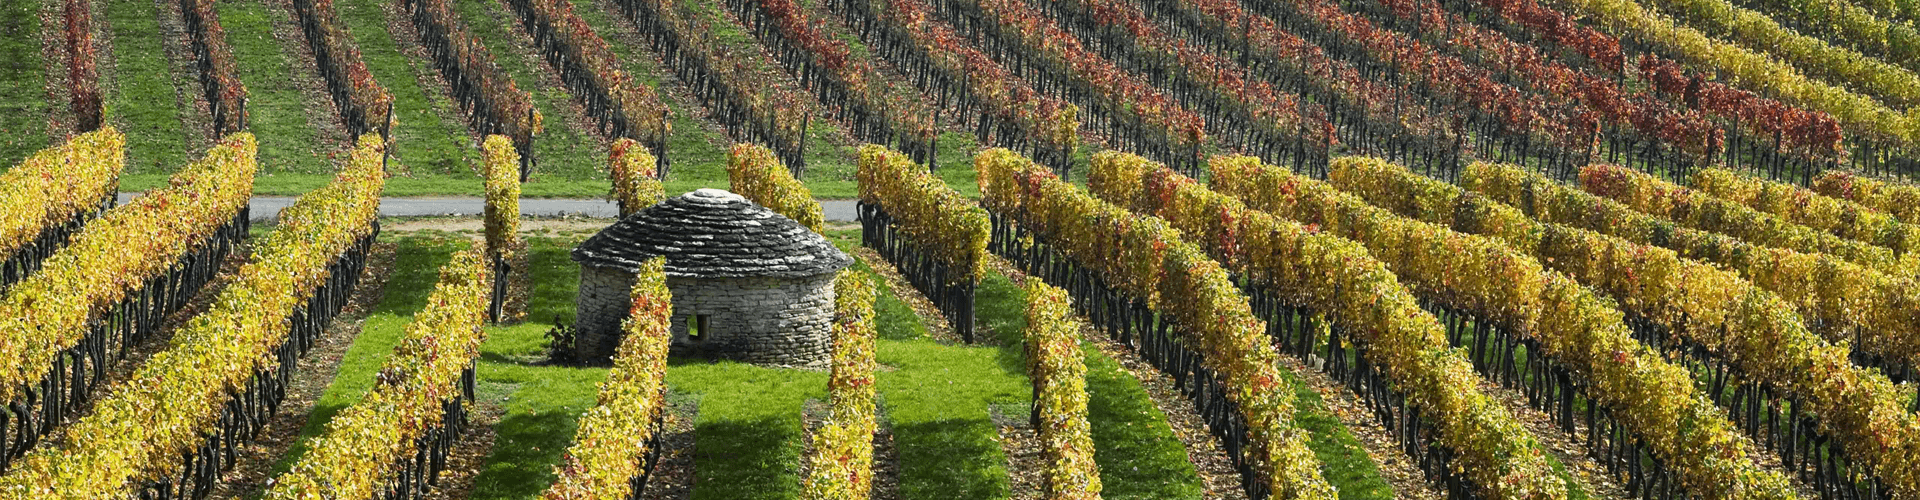 Eten en drinken in Bourgogne: wijnroute